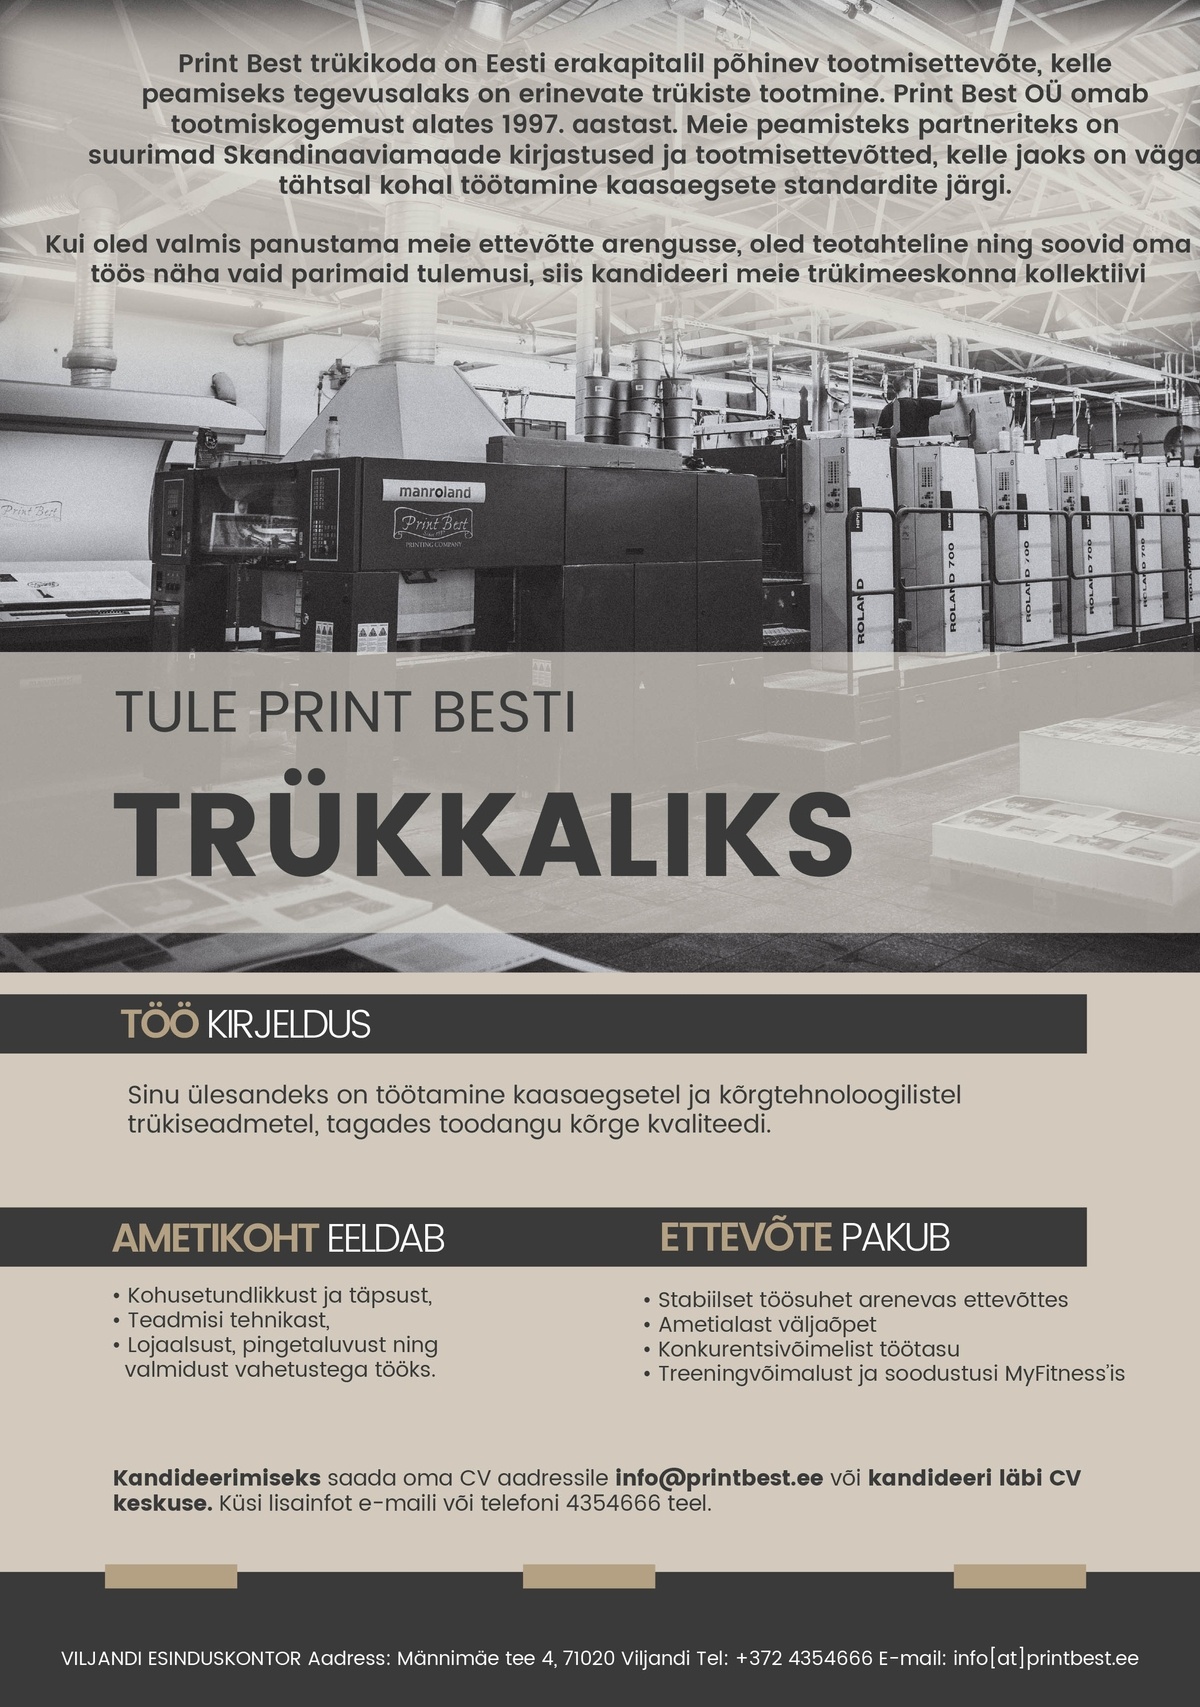 Print Best OÜ Trükkal